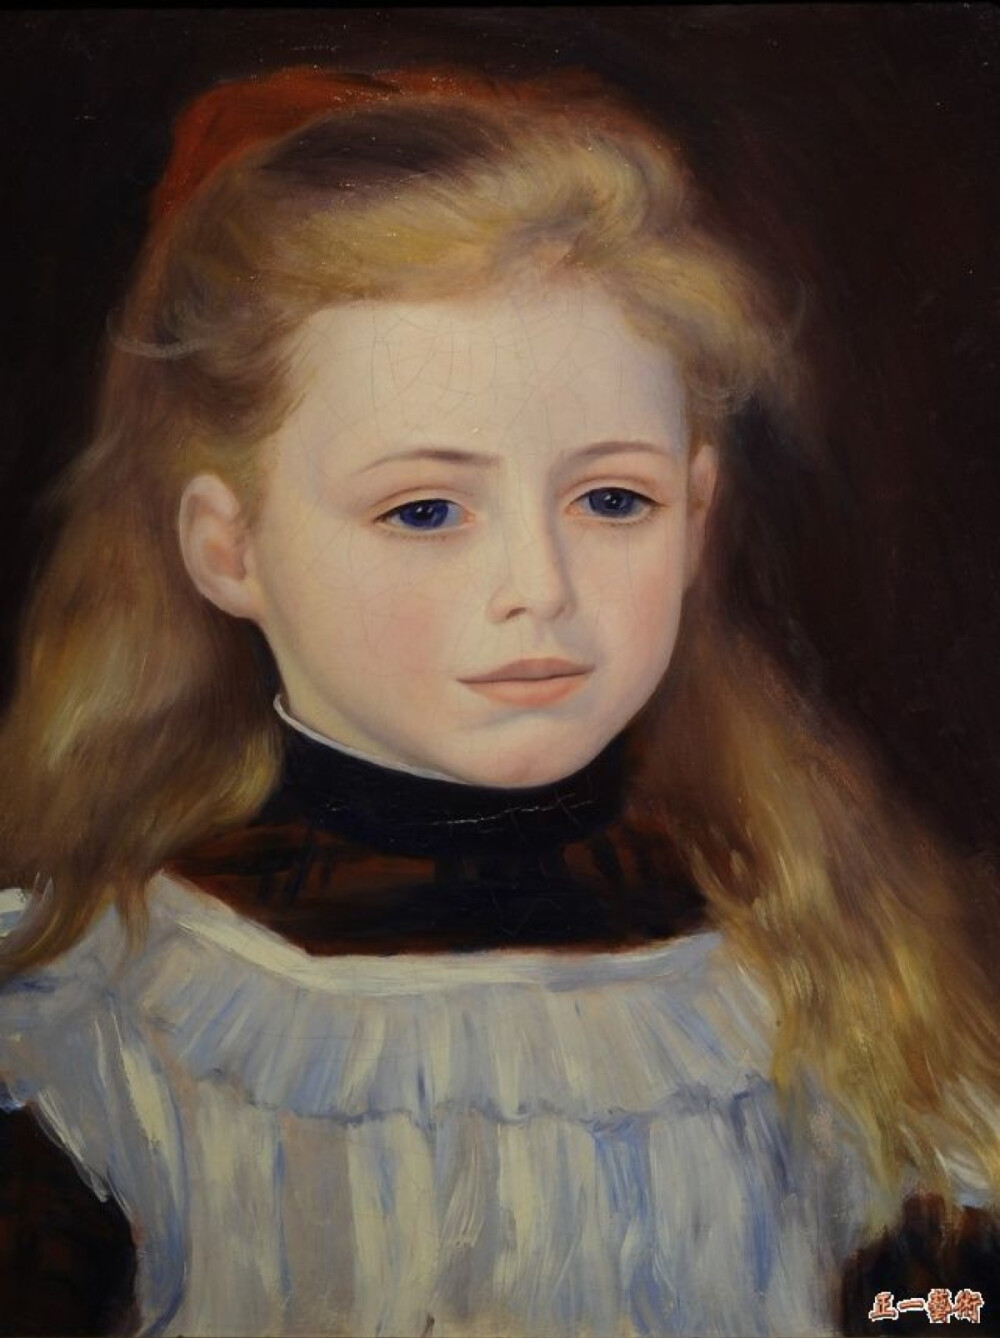  262、扎白围裙的女孩 雷诺阿 法国 画布油画 1884年 35.20×27.10厘米 在所有的印象派画家中，雷诺阿是一个始终坚守纯艺术品德的人，但是，他同时又是一个最执拗地按照订单绘制肖像画，以使自己扬名并致富的印象派画家。他能让所有的观众看懂他的作品，面对他富有美感和表现力的画作，任何人都无法做到无动于衷。此画是他定式画法后的典范之作，他这样做，完全是为了对抗印象派风格的色彩斑驳的画法。这个四岁的小女孩的几幅肖像画都出自雷诺阿之手，因为女孩的父亲保罗•贝拉尔德向画家订制了他们全家，包括他的妻子和四个儿子的肖像。